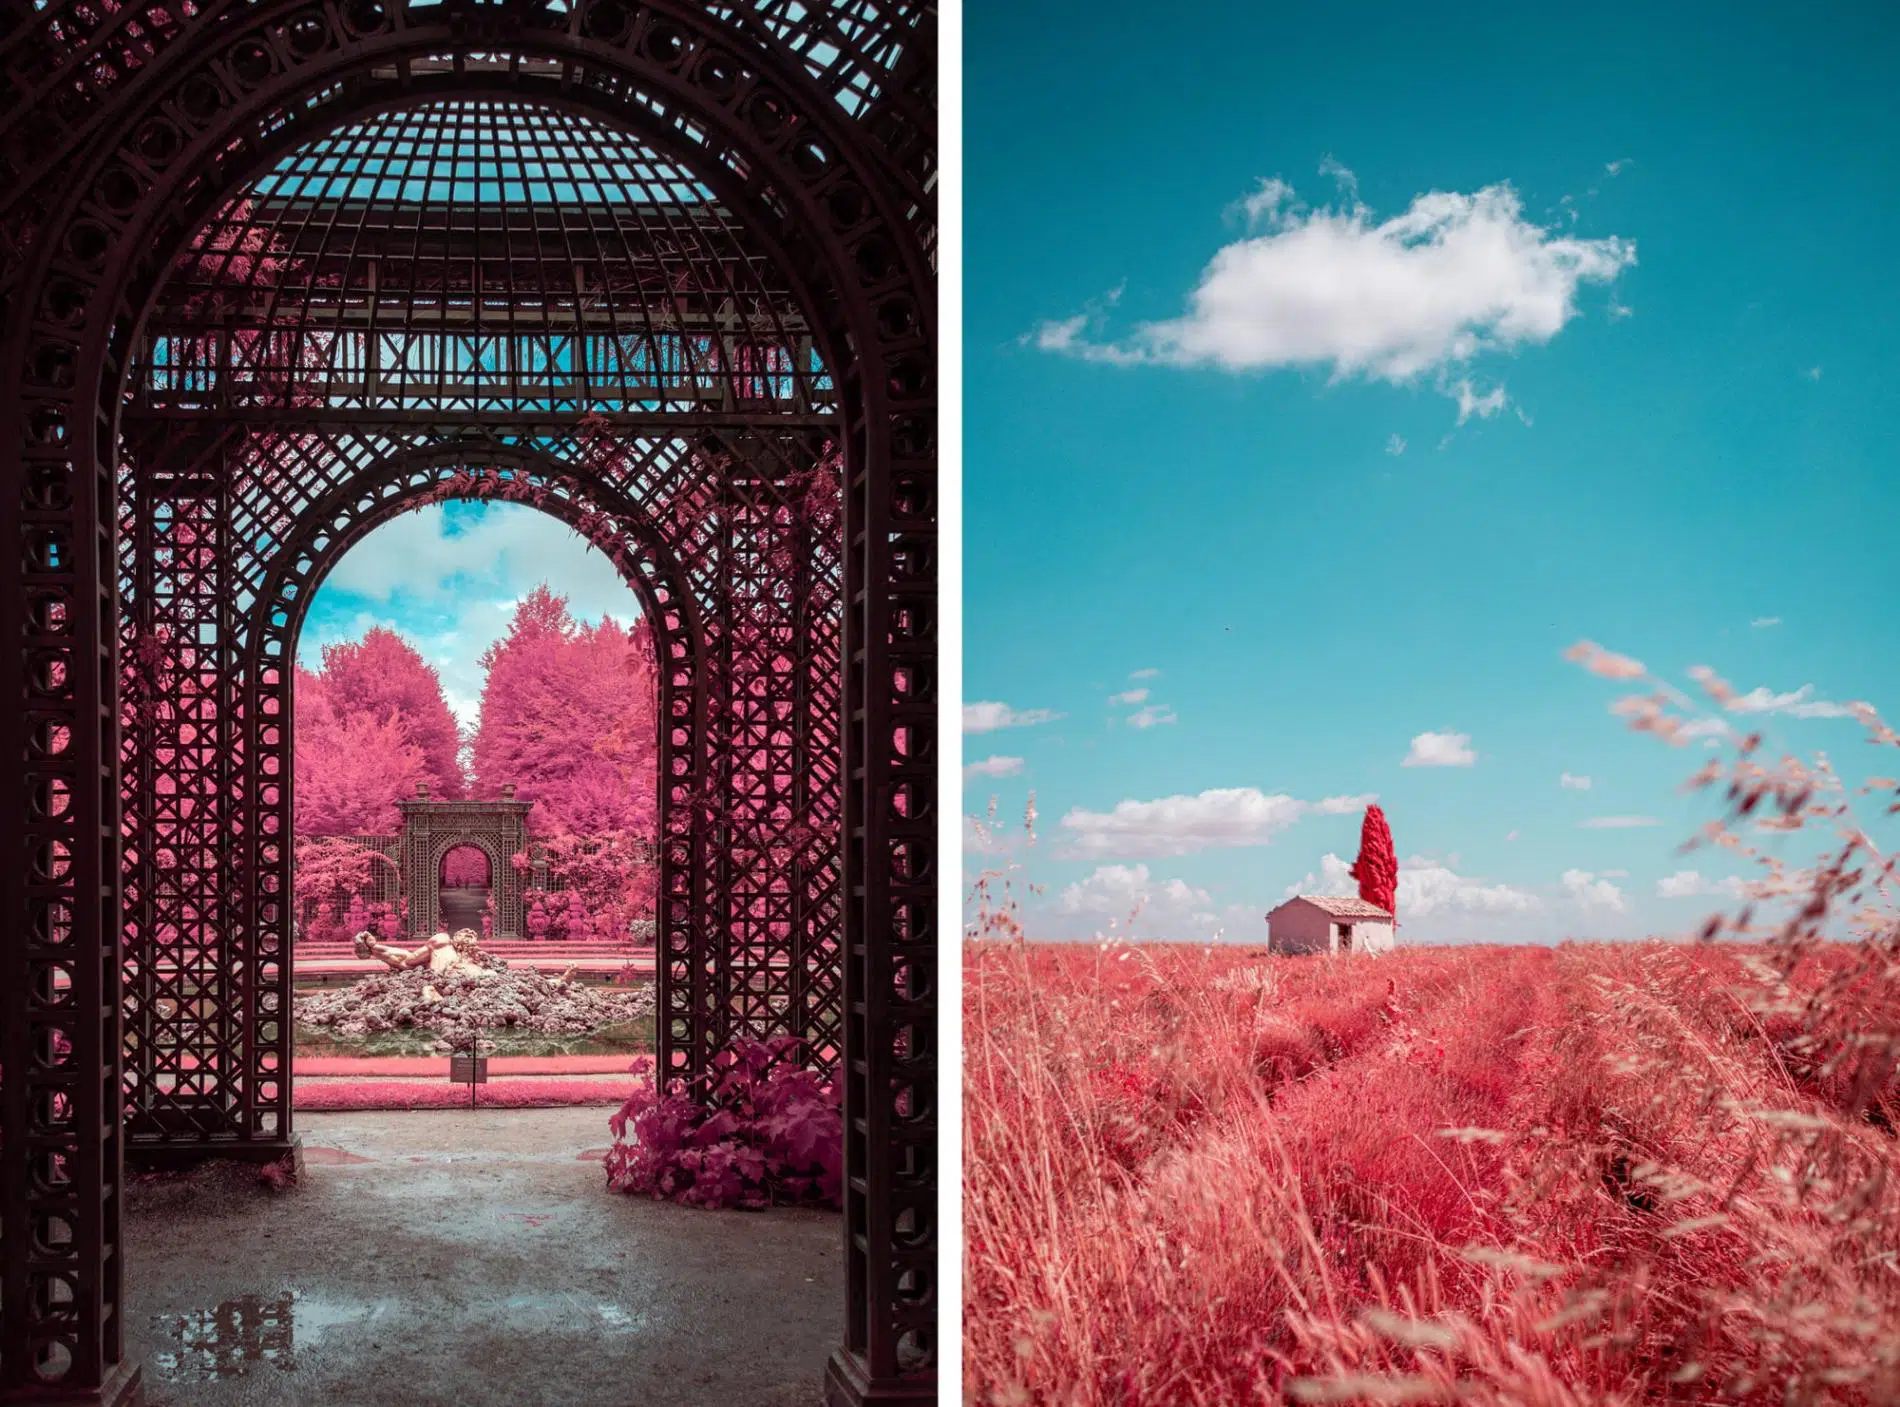 fotografia infrajoga de Paolo Pettigiani jardin con arcos y espigas que se agitan